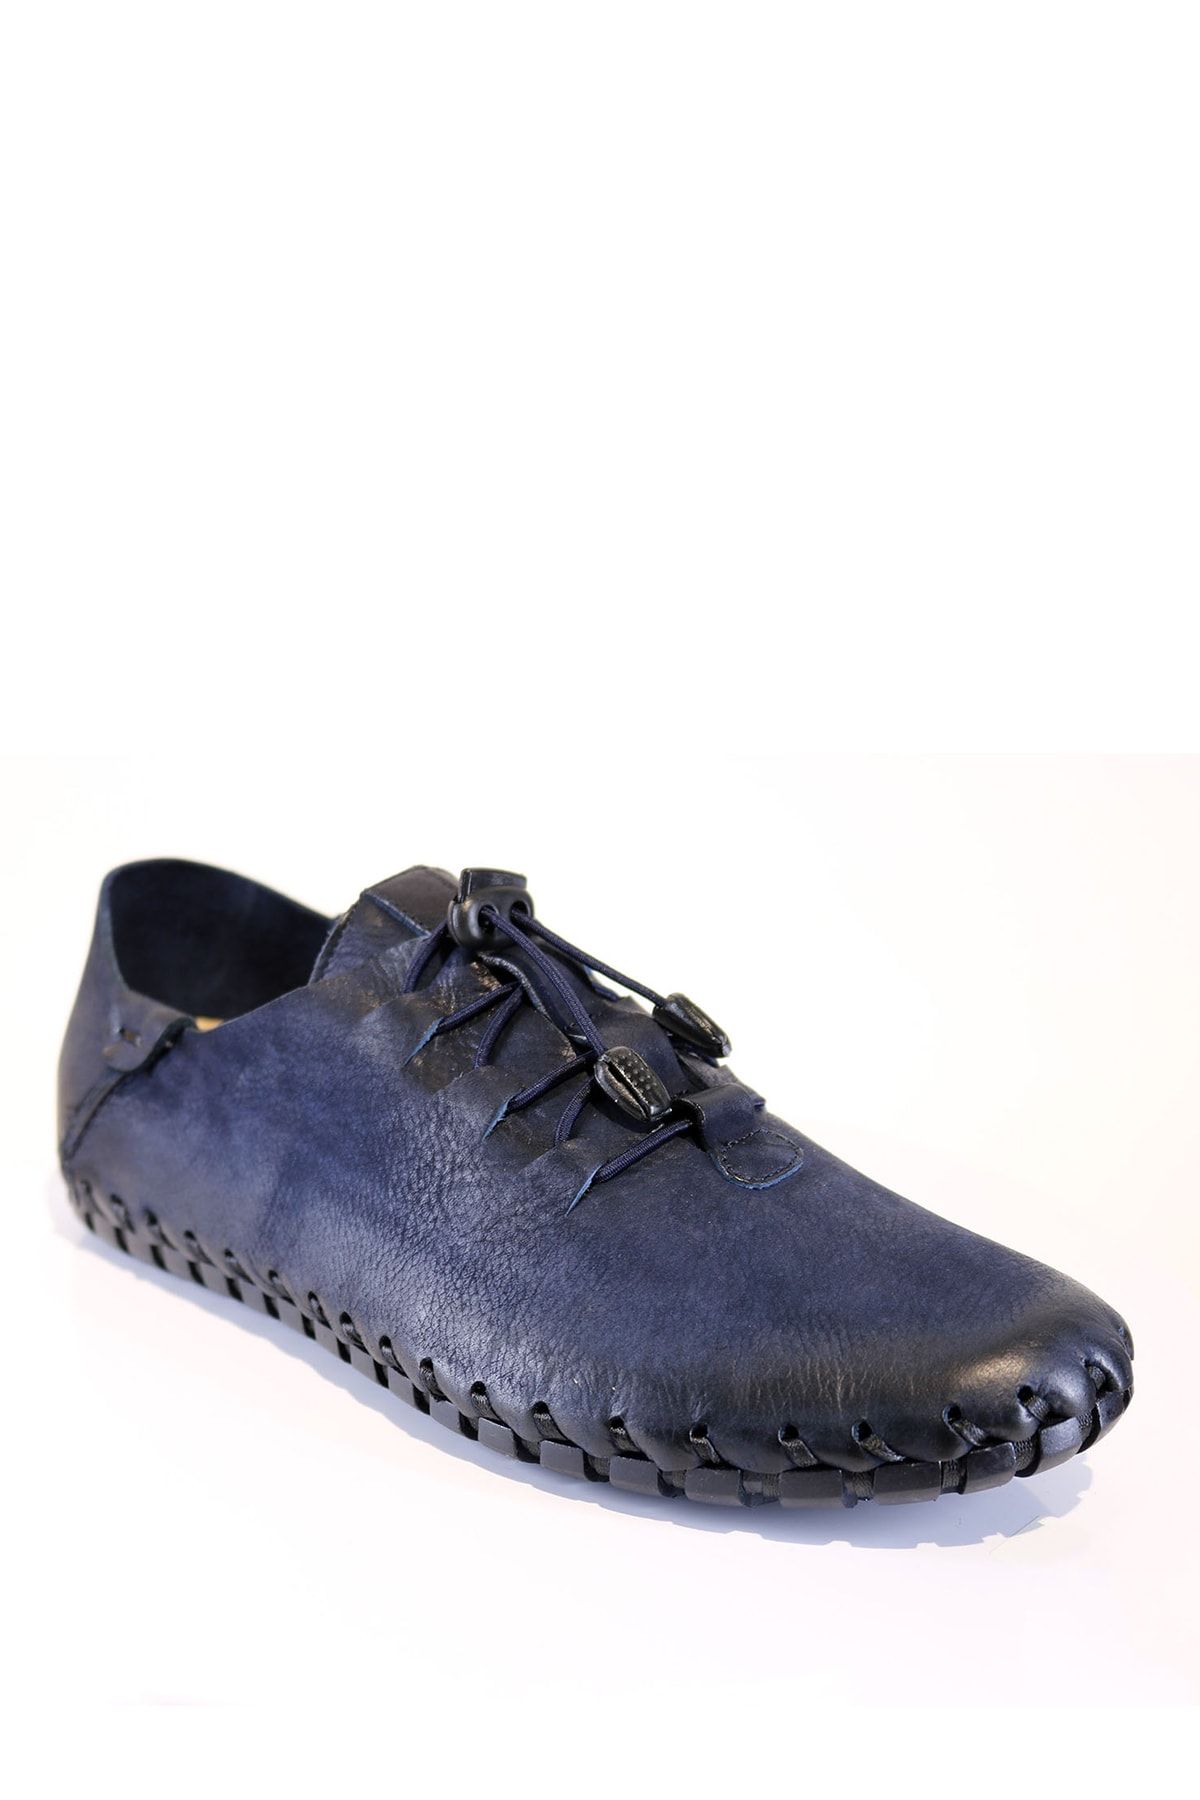 Onemarka Erkek Hakiki Deri Lacivert Çarık Modeli Bağcıklı Günlük Ayakkabı